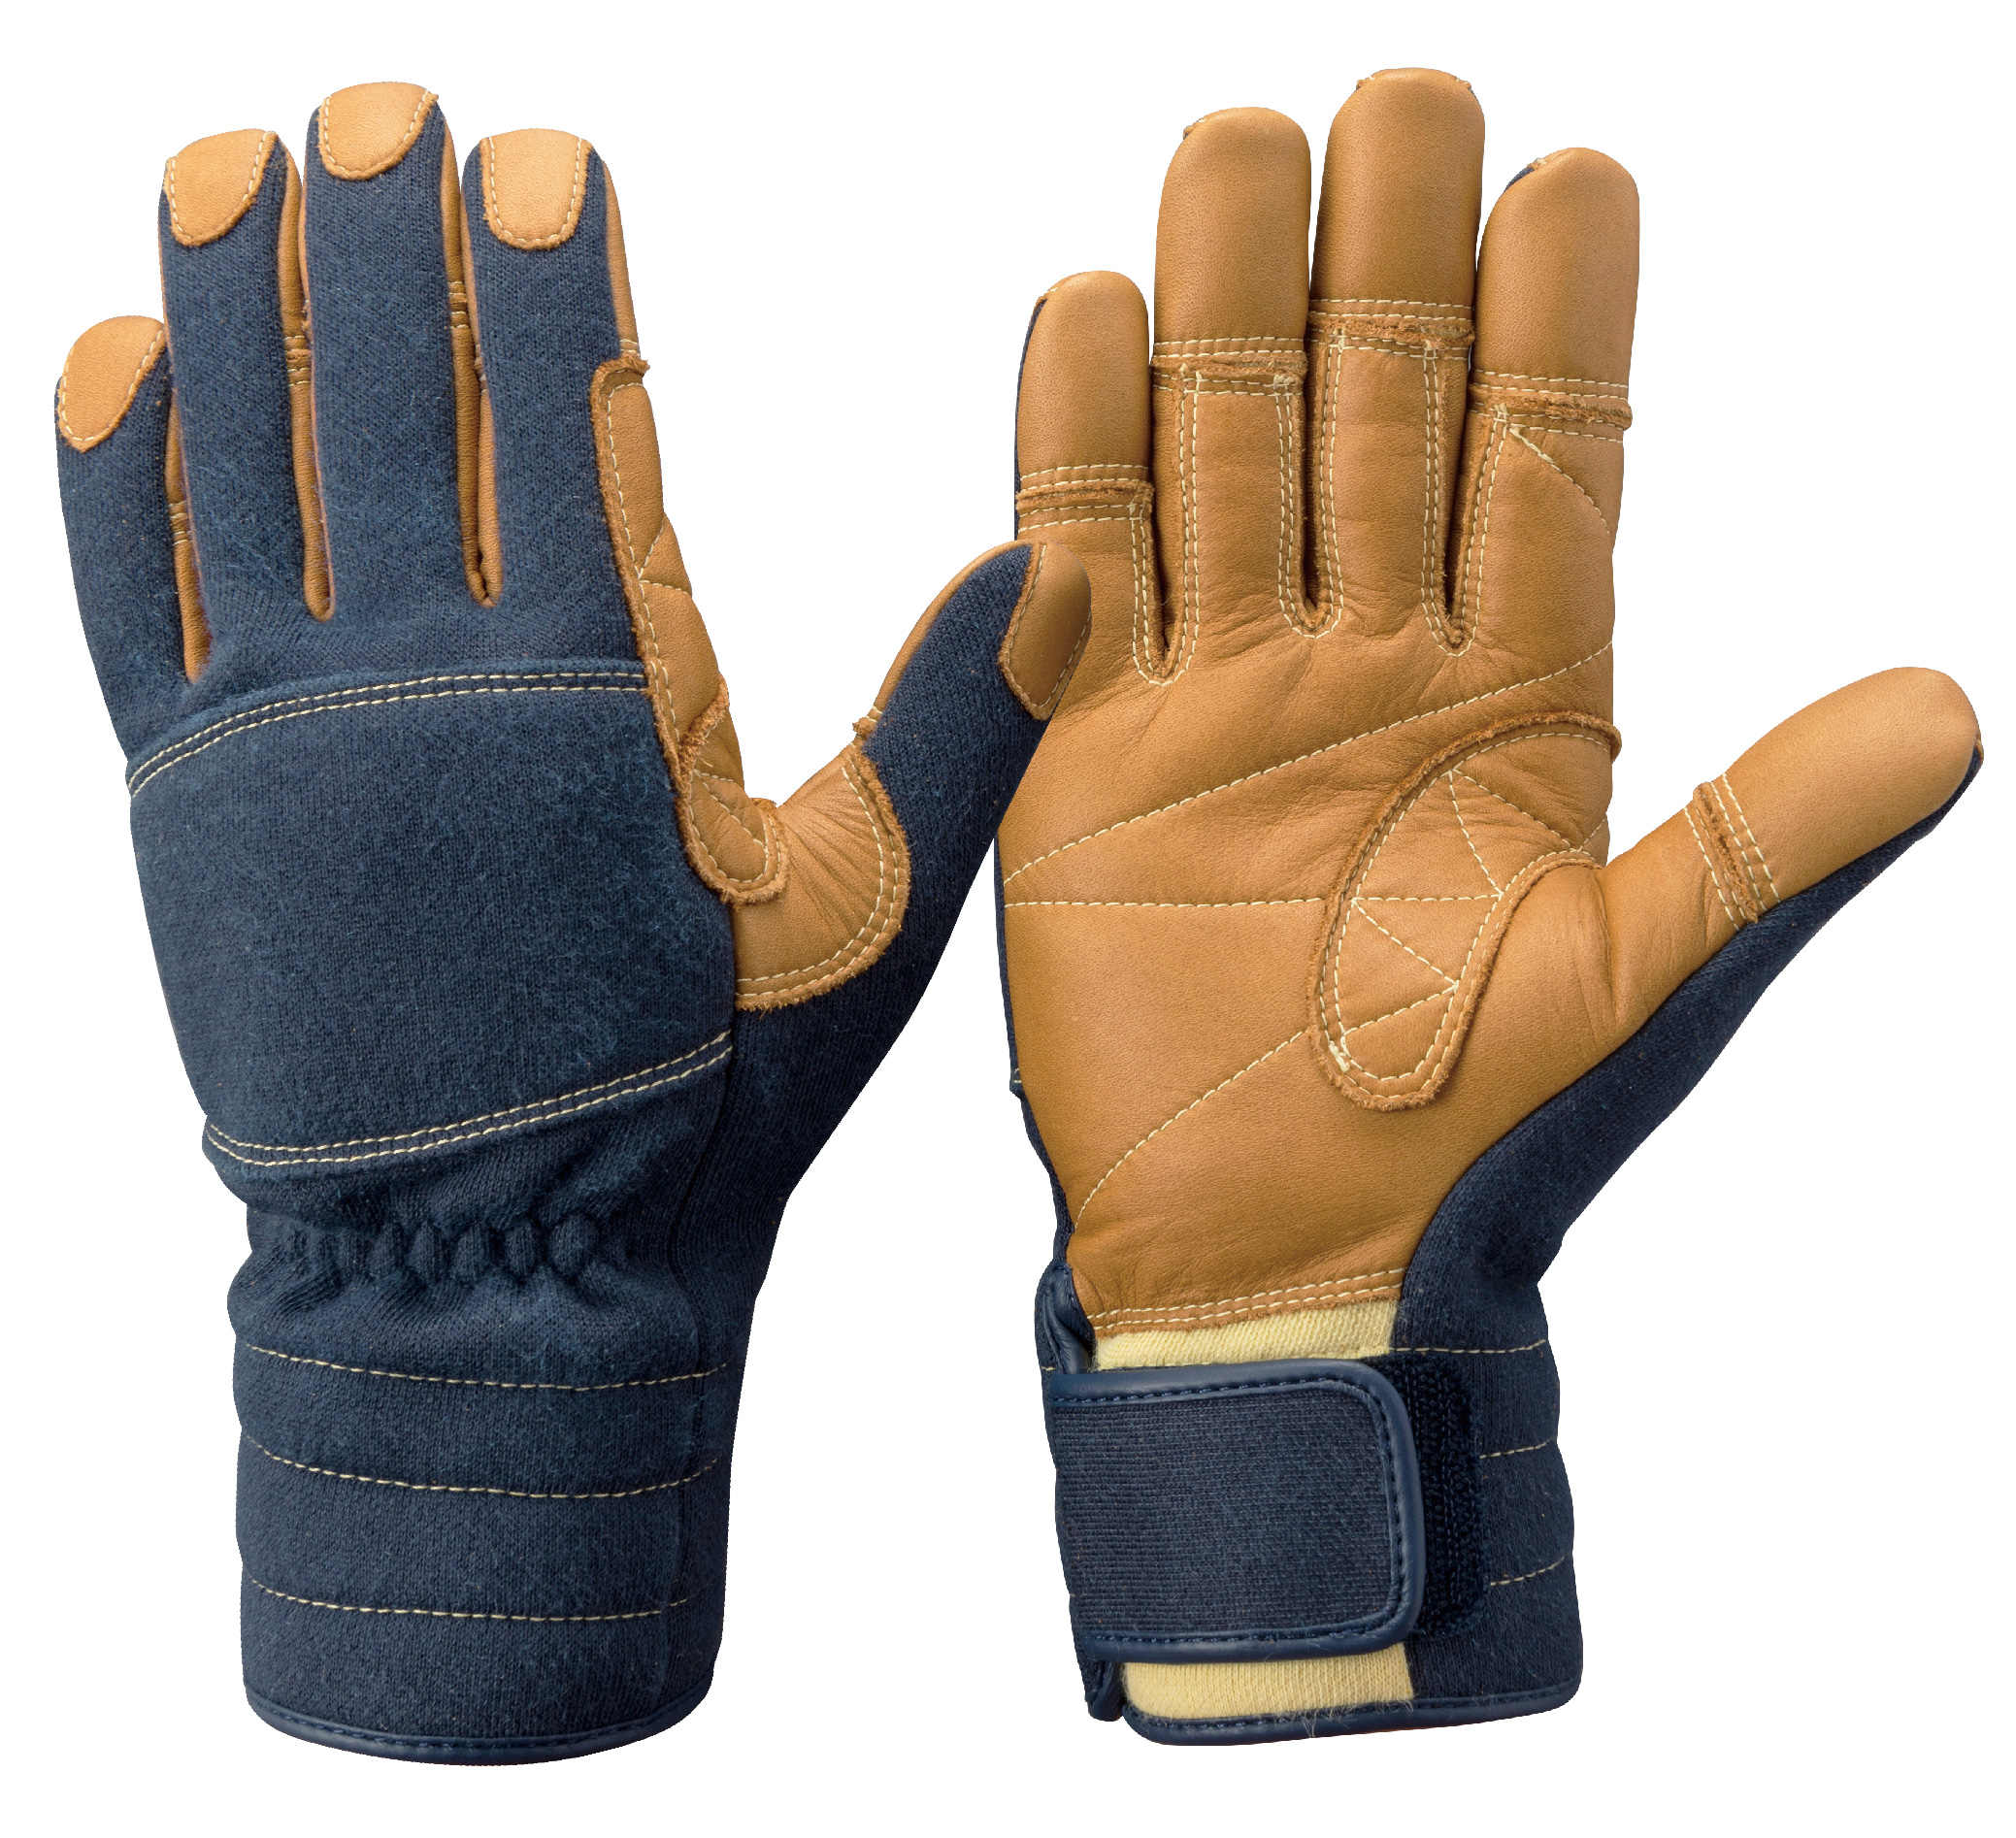 ケブラー®繊維製防火手袋2011ガイドライン対応